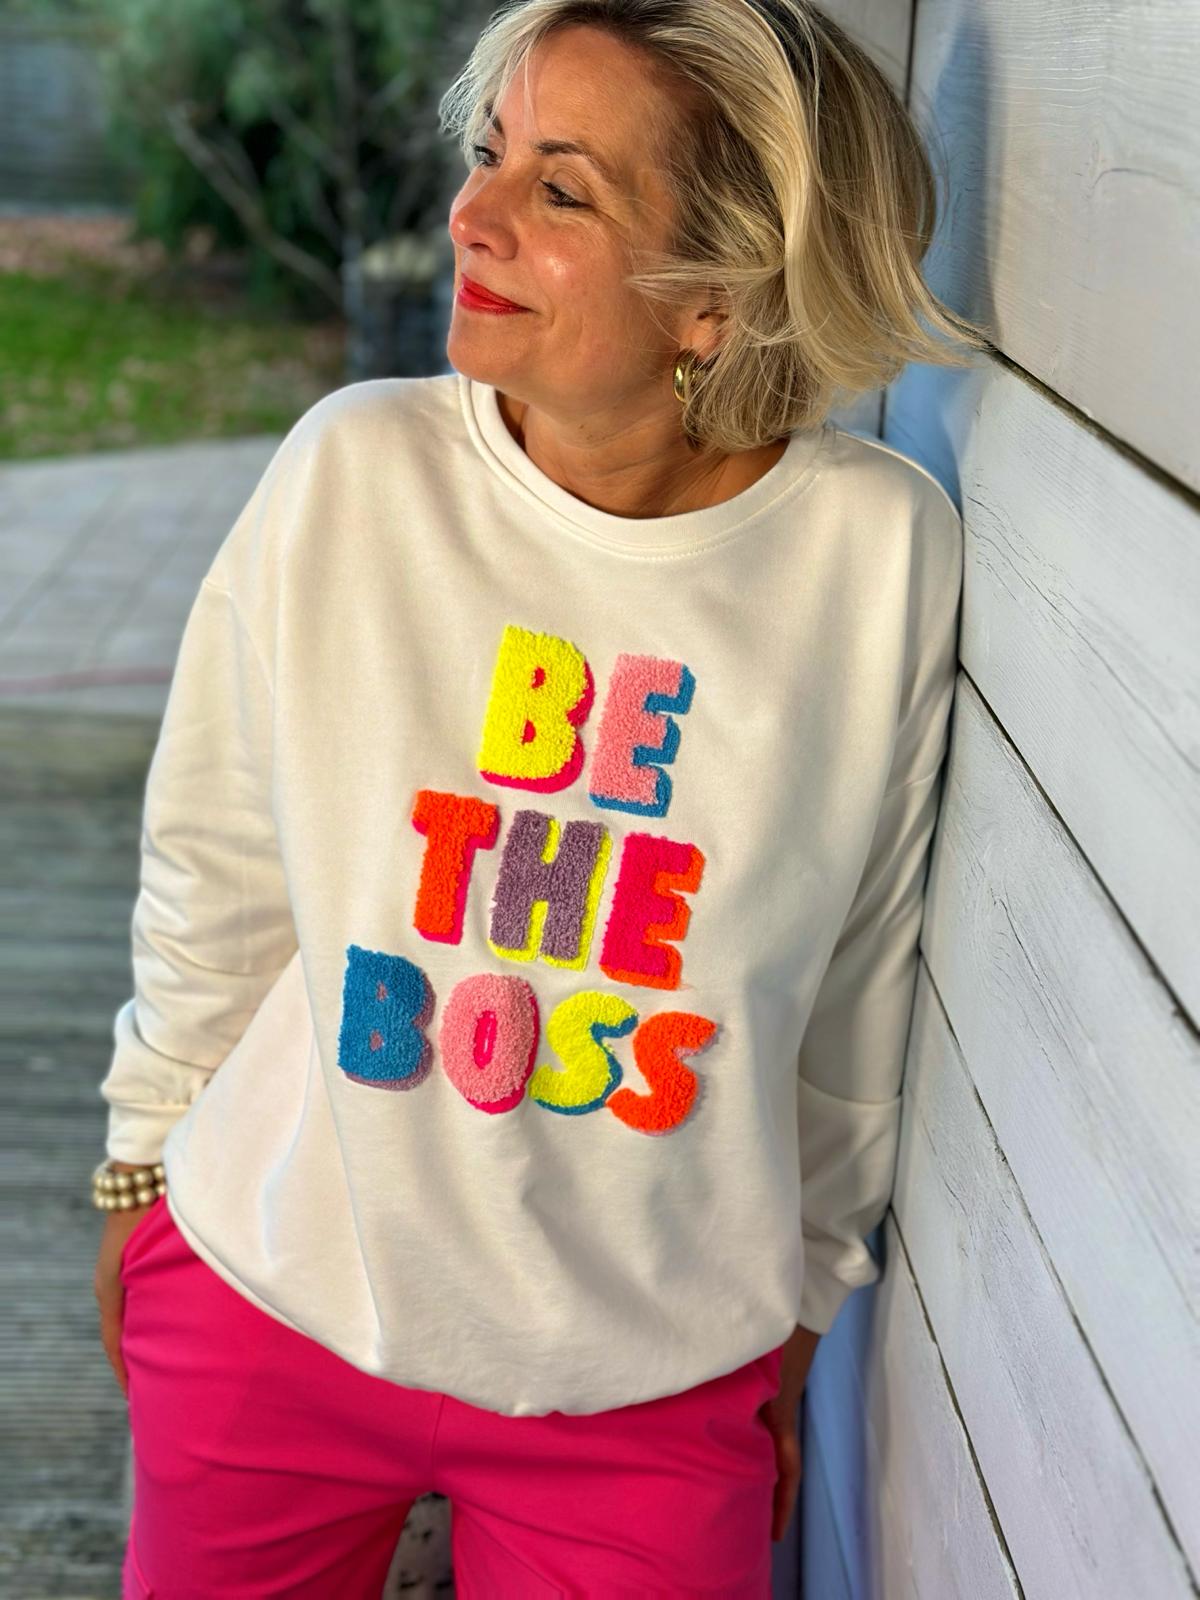 Kuschel Sweatshirt "BE THE BOSS" in Weiss